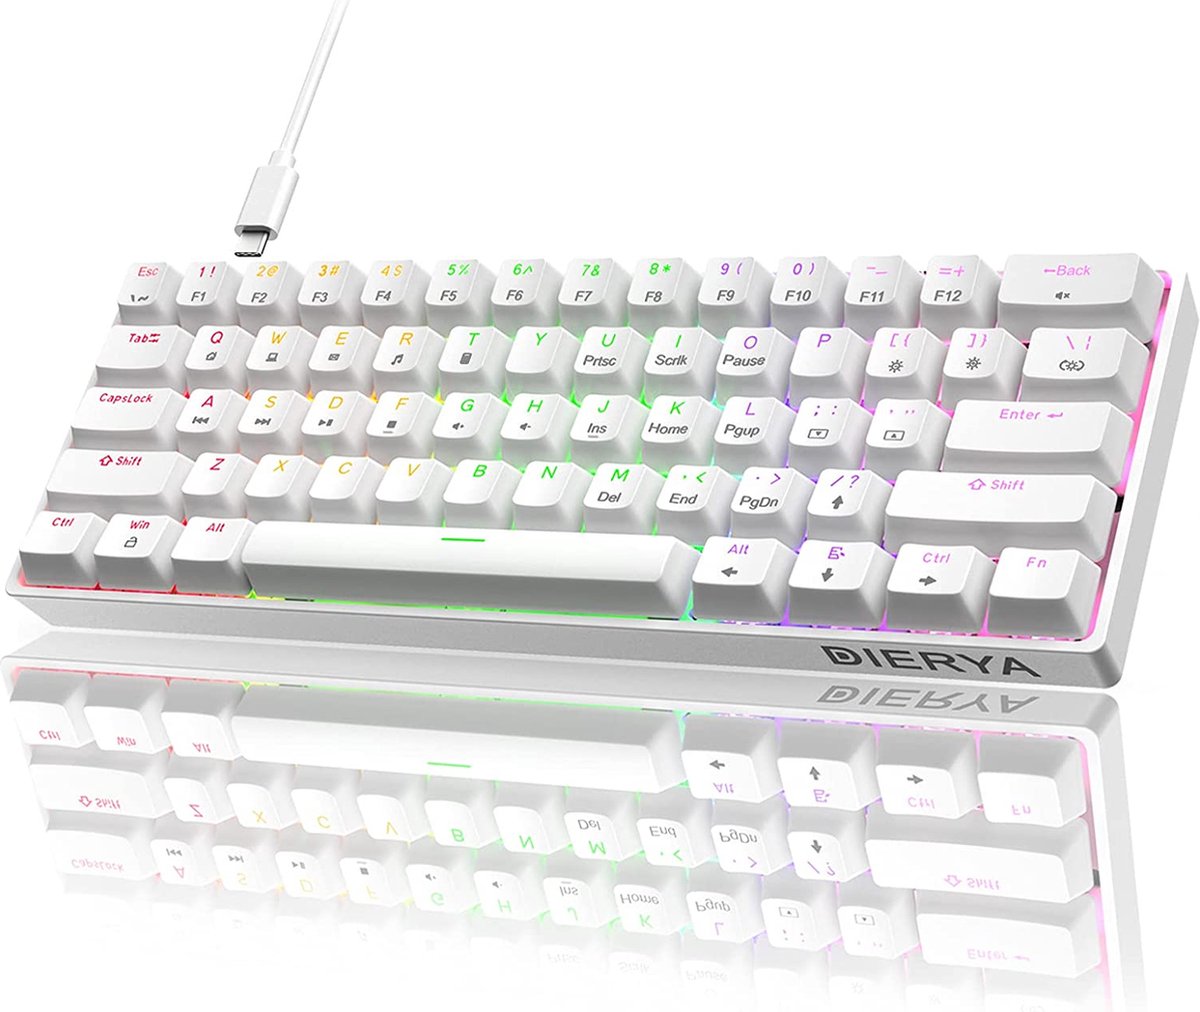  DIERYA 60% Mechanical Keyboard, DK61se Wired Gaming